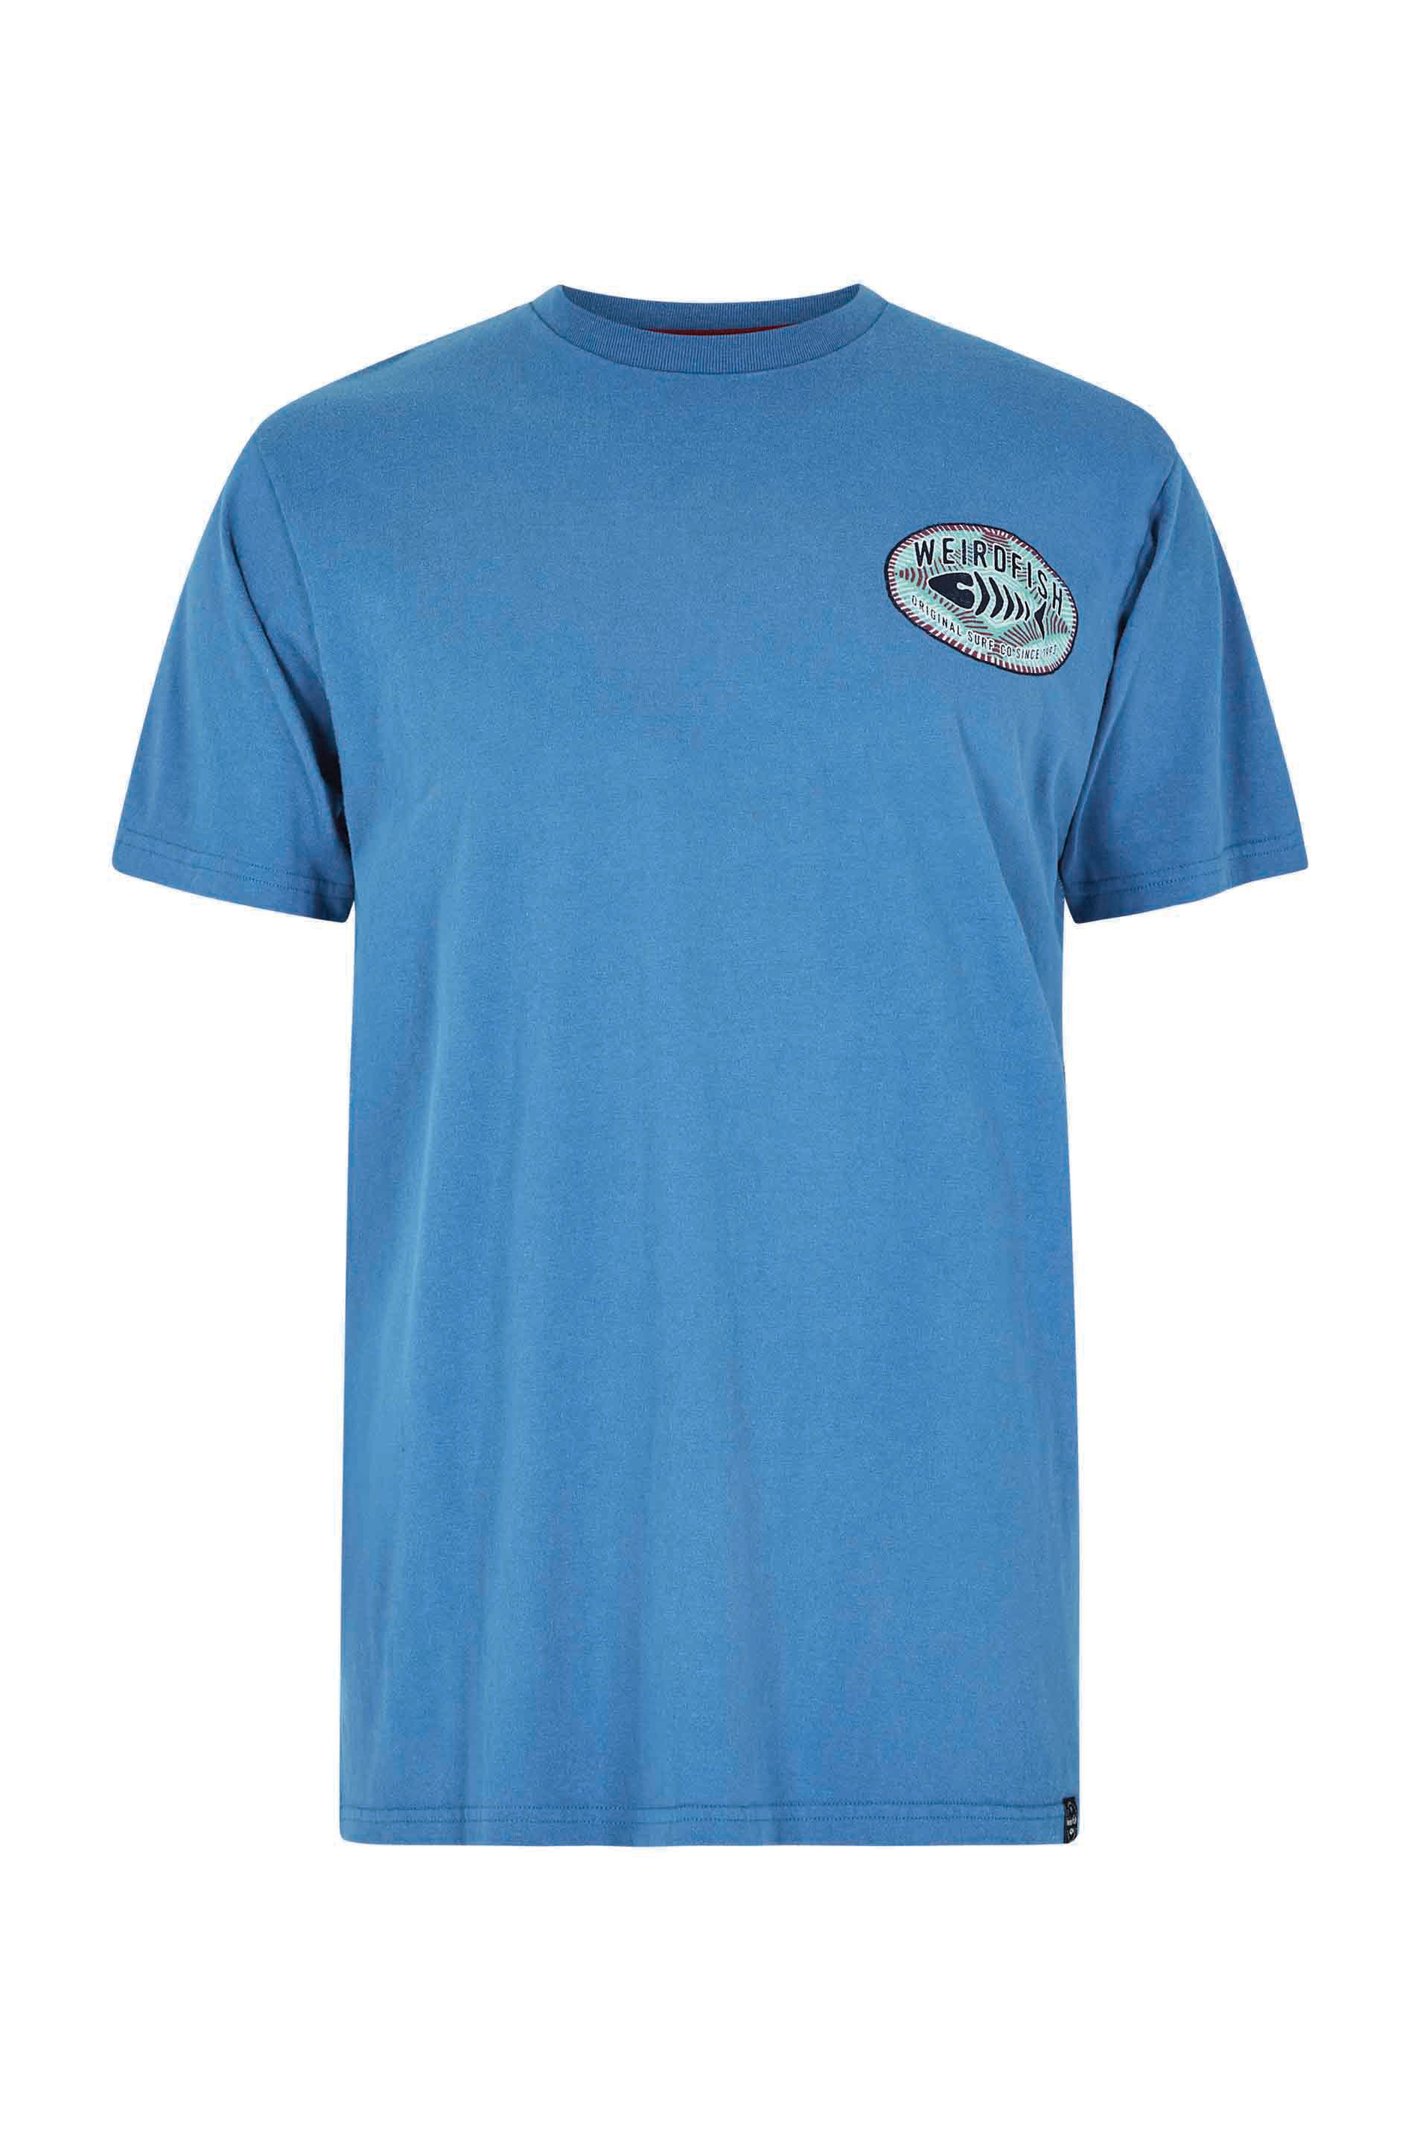 Weird Fish Original Surf Graphic T-Shirt Blue Sapphire Size 3XL